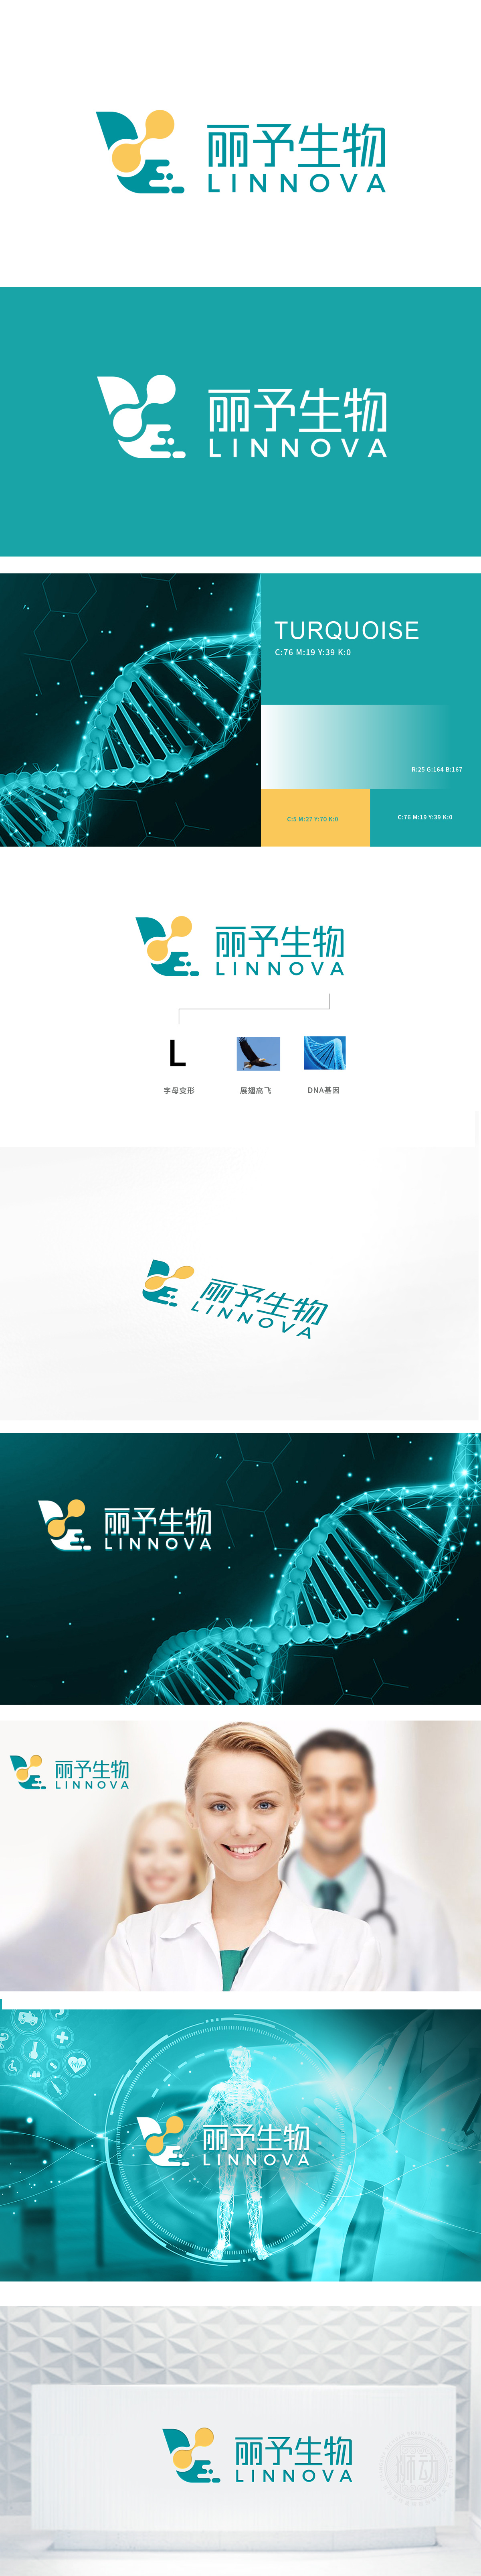 上海丽予生物 医疗器械 LOGO设计